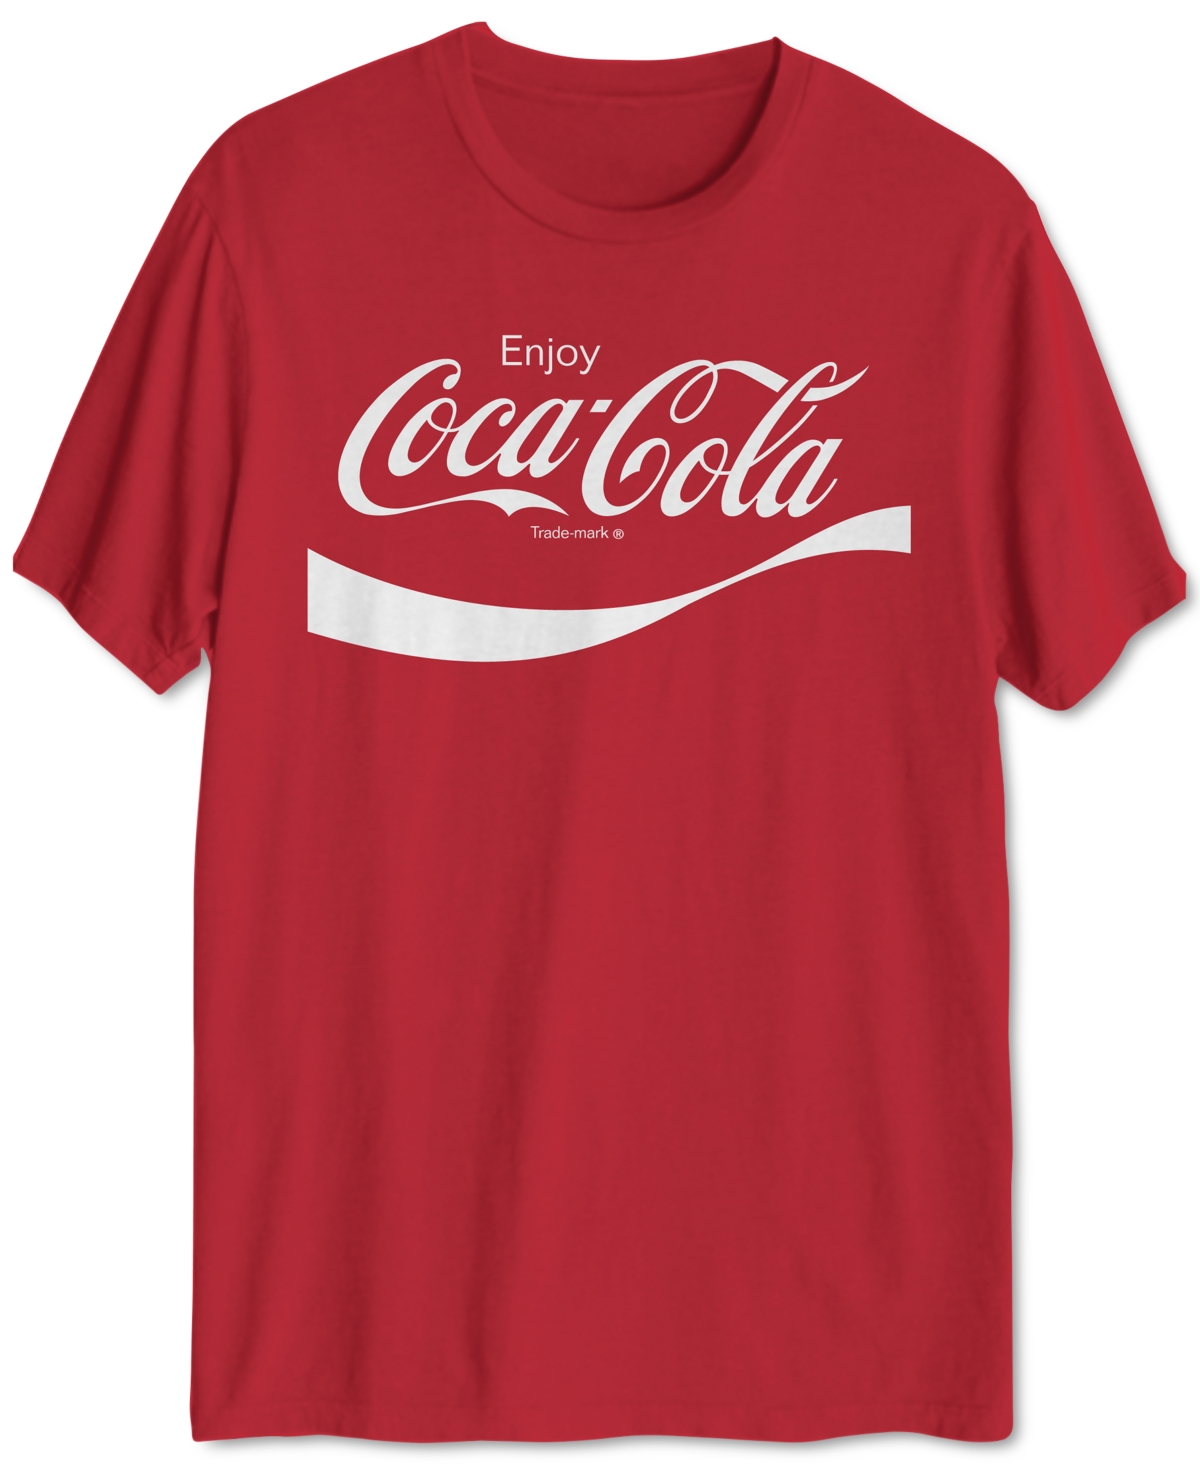 Coca-Cola Men's T-Shirt - Red